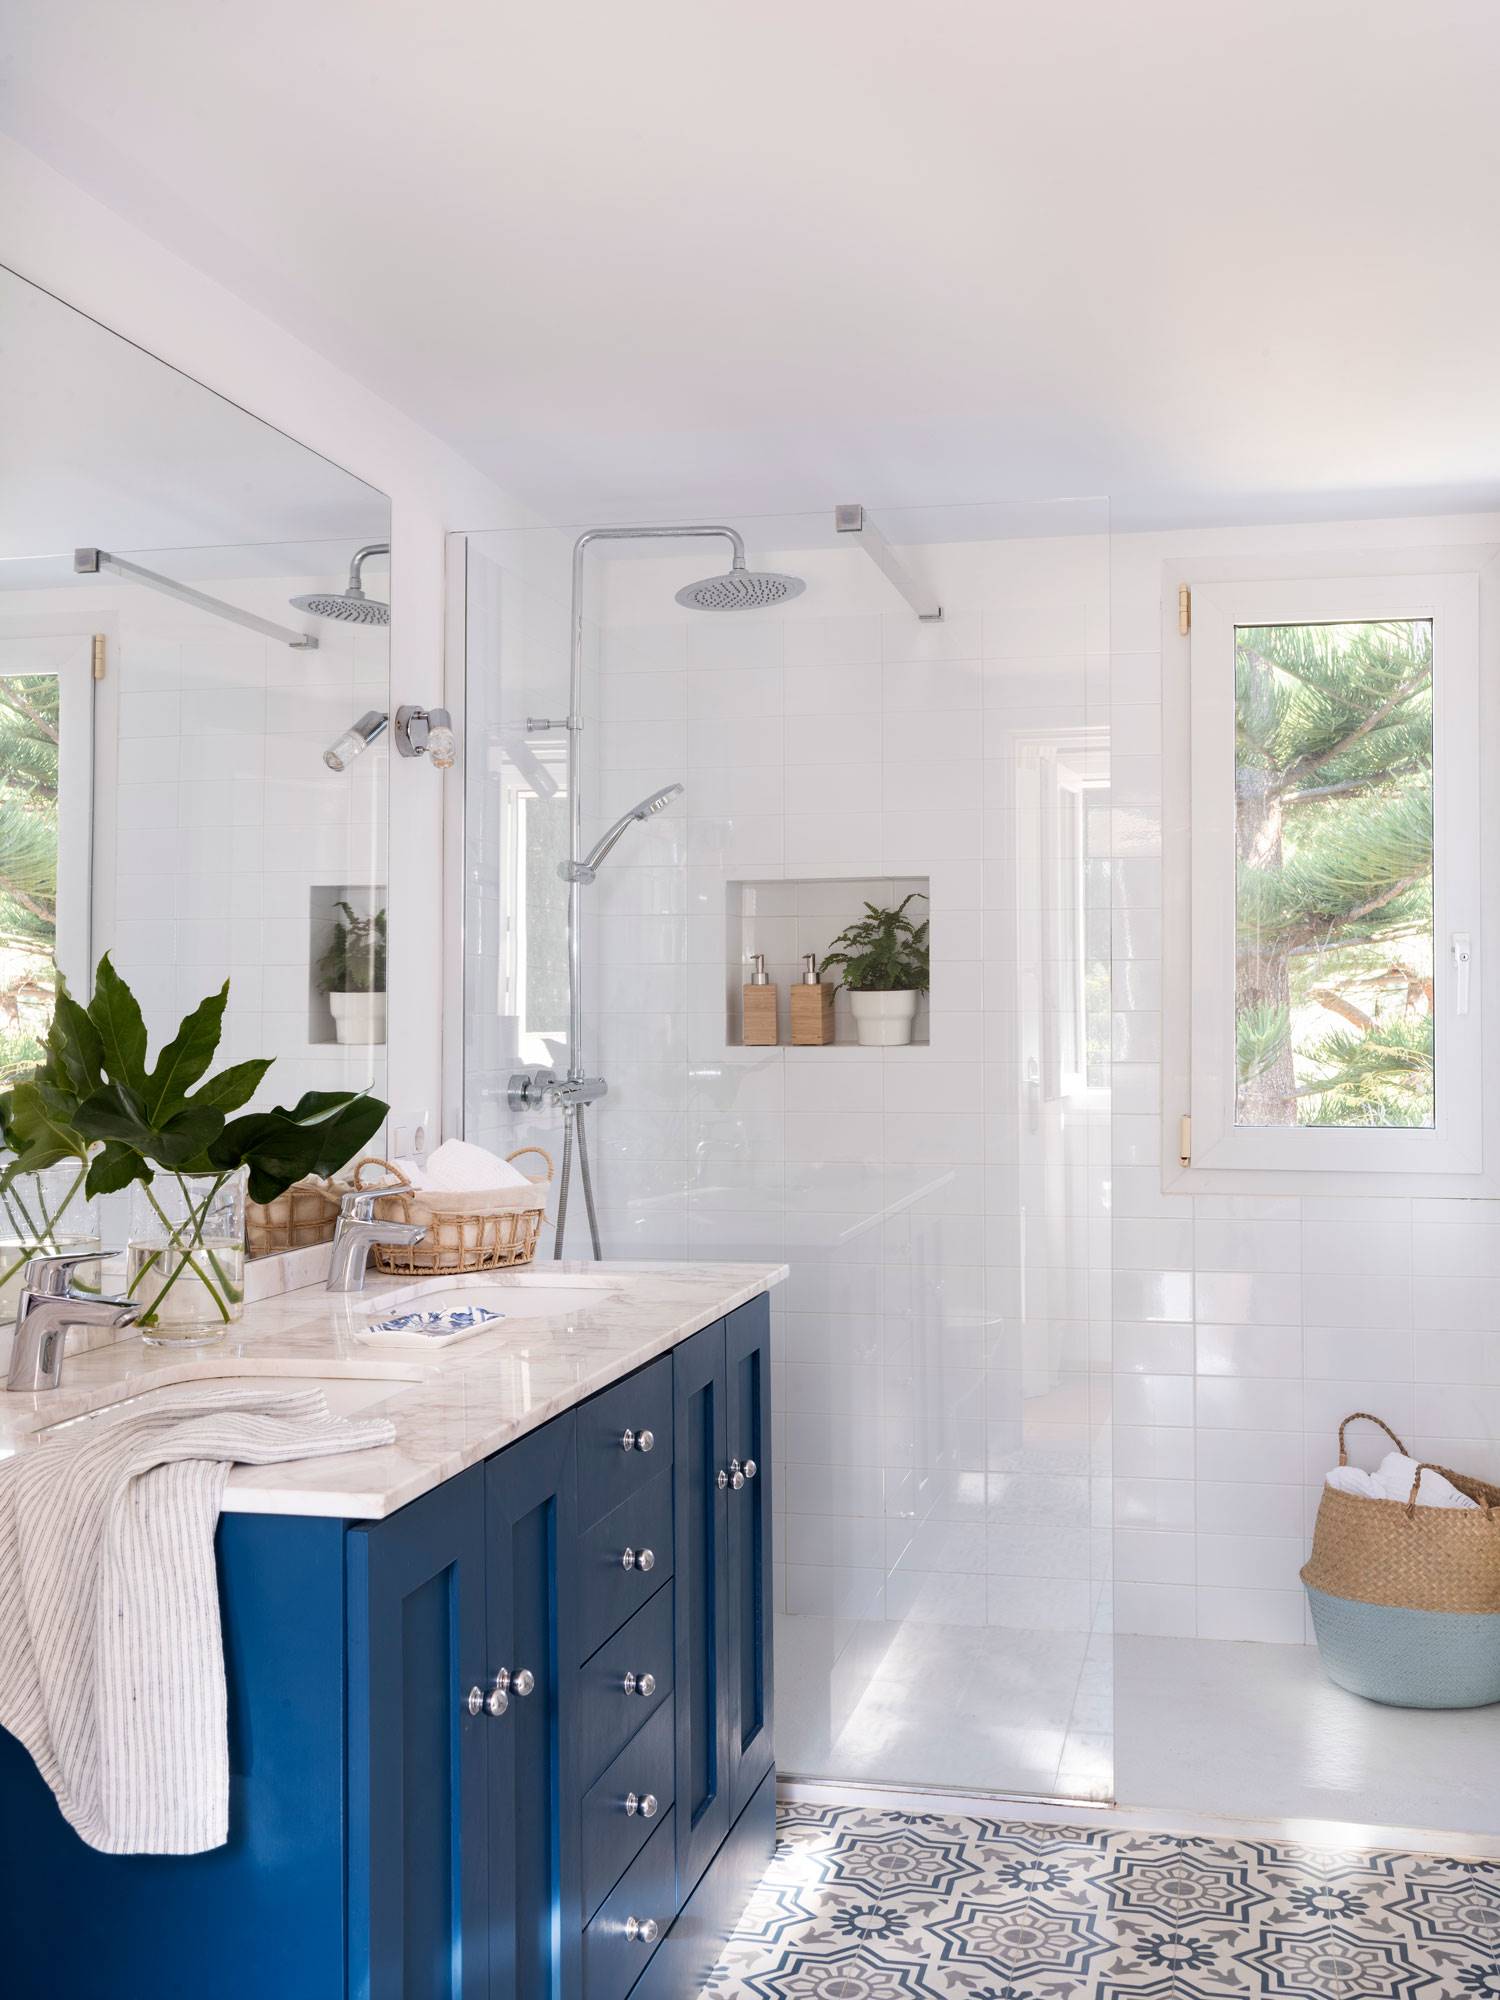 Baño clásico con mueble azul, encimera de mármol y mampara transparente. 